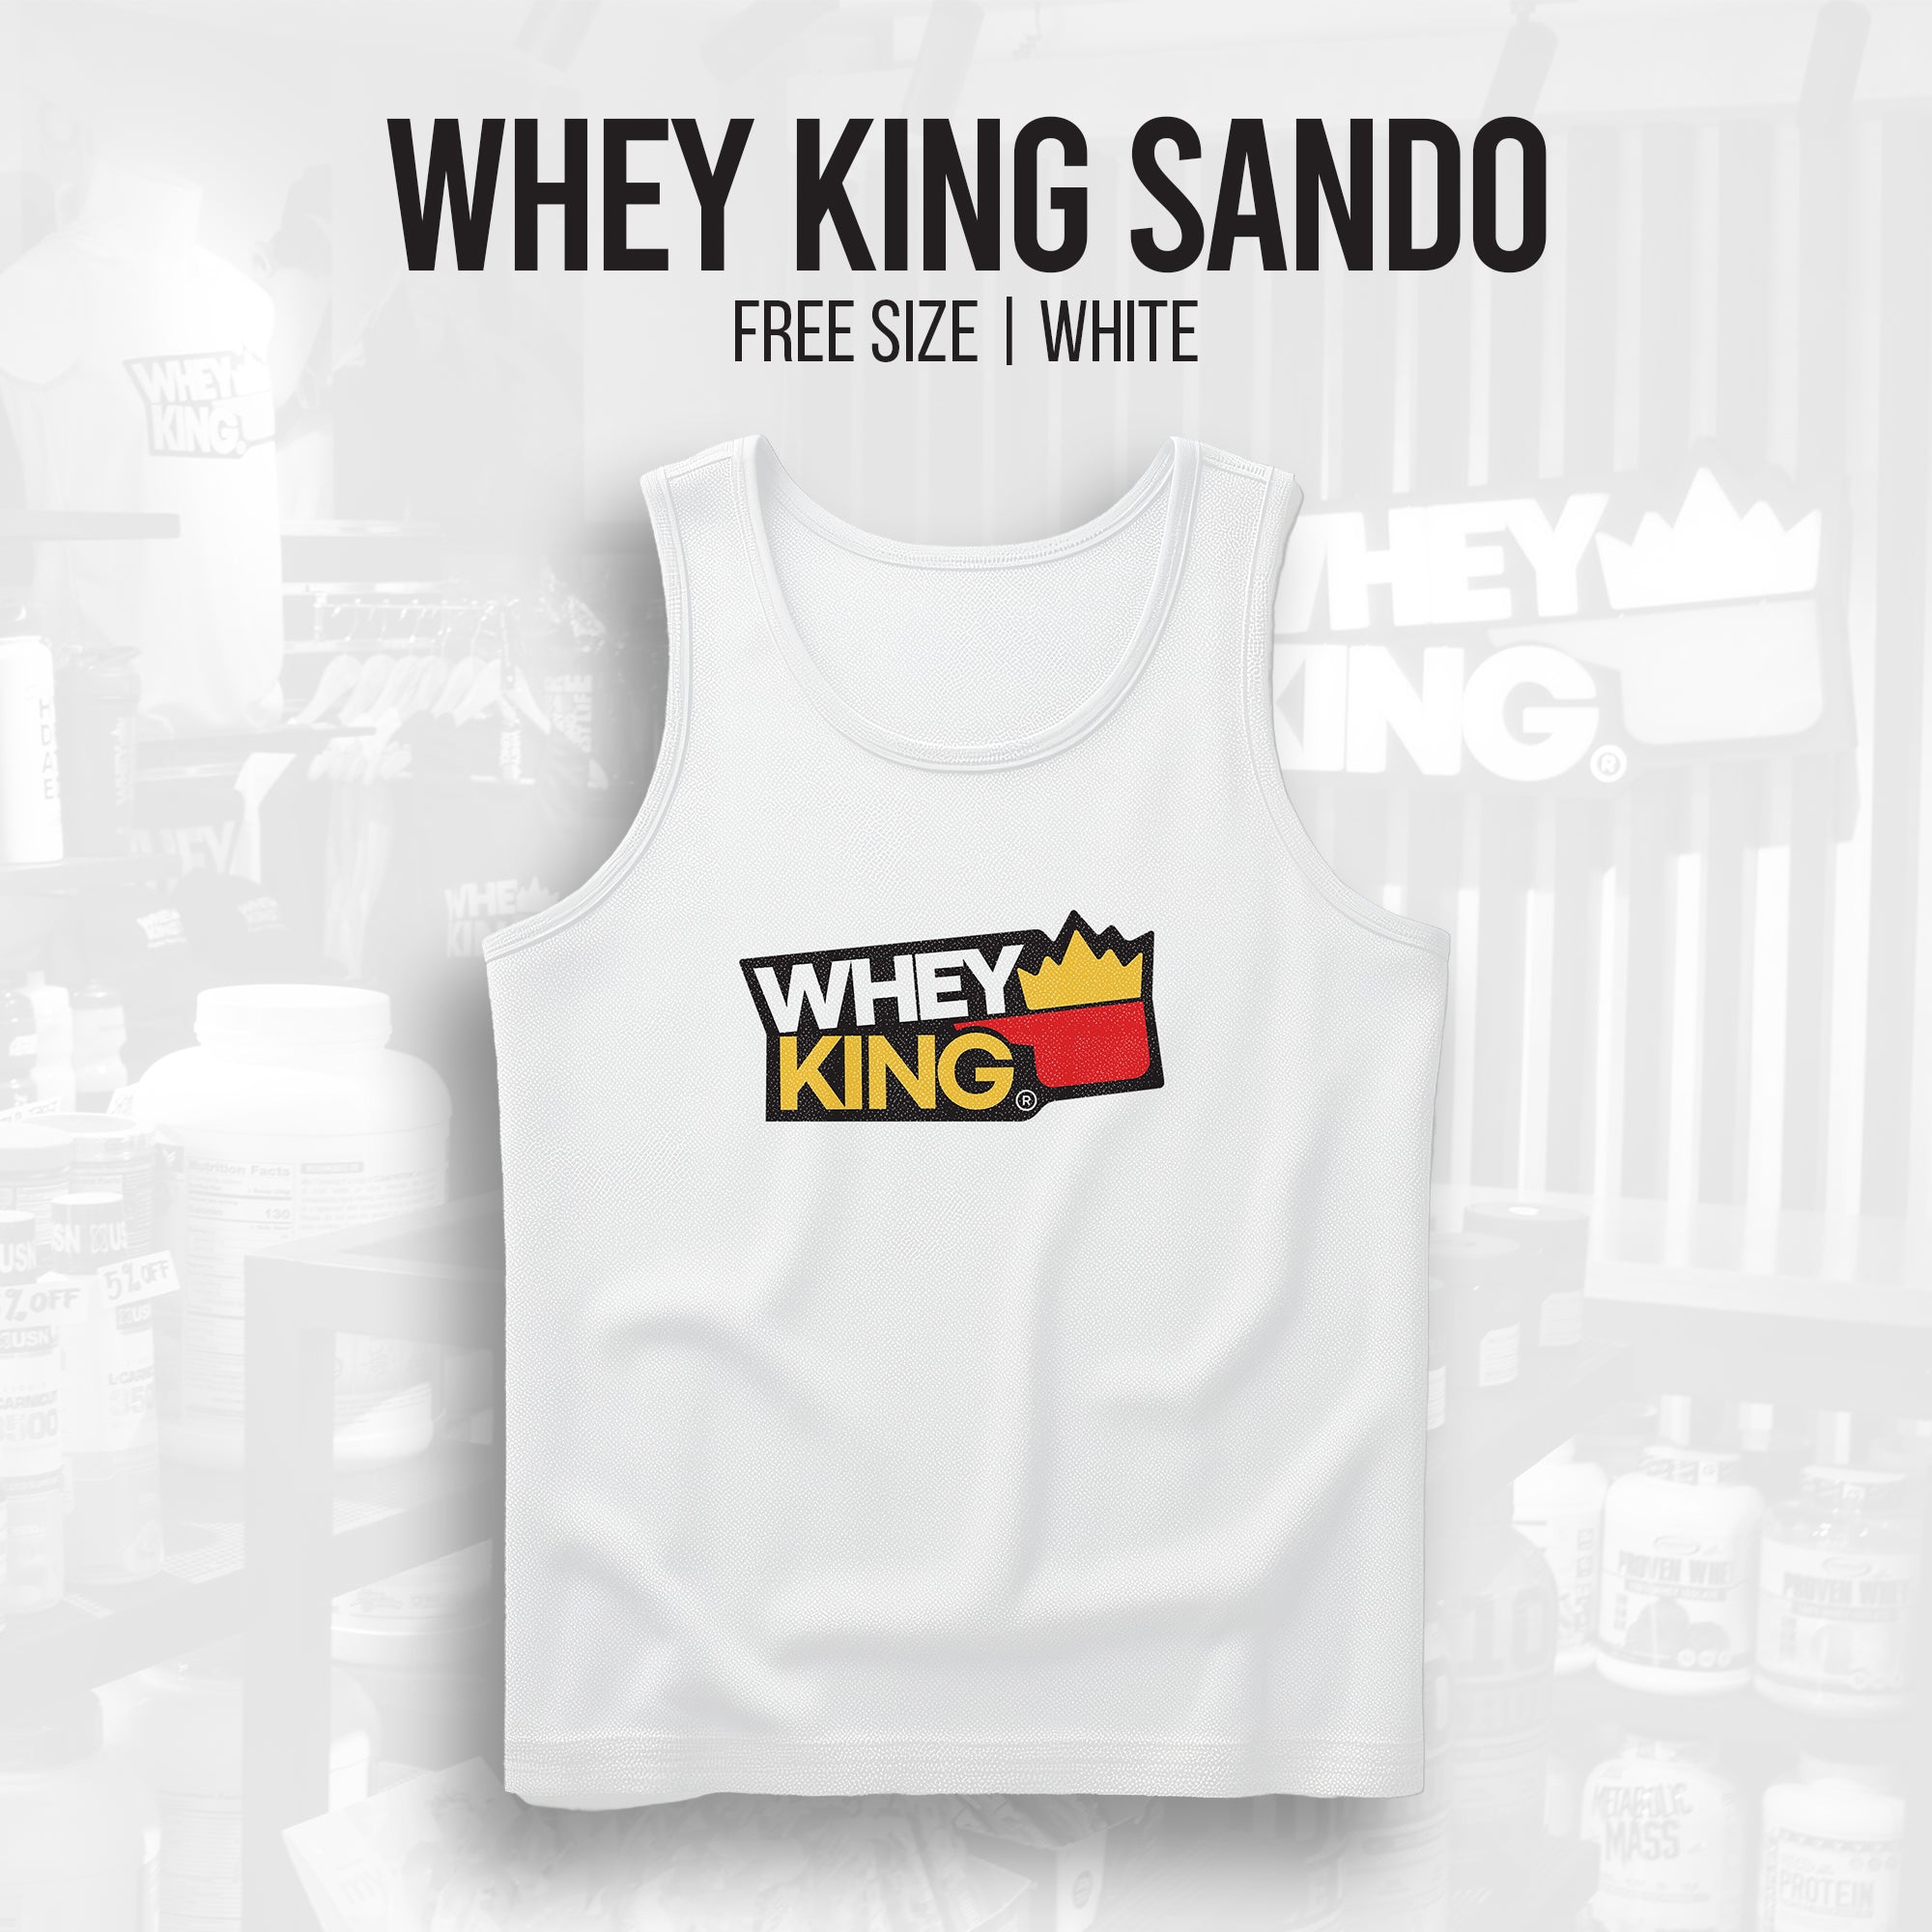 Whey King Sando Free Size